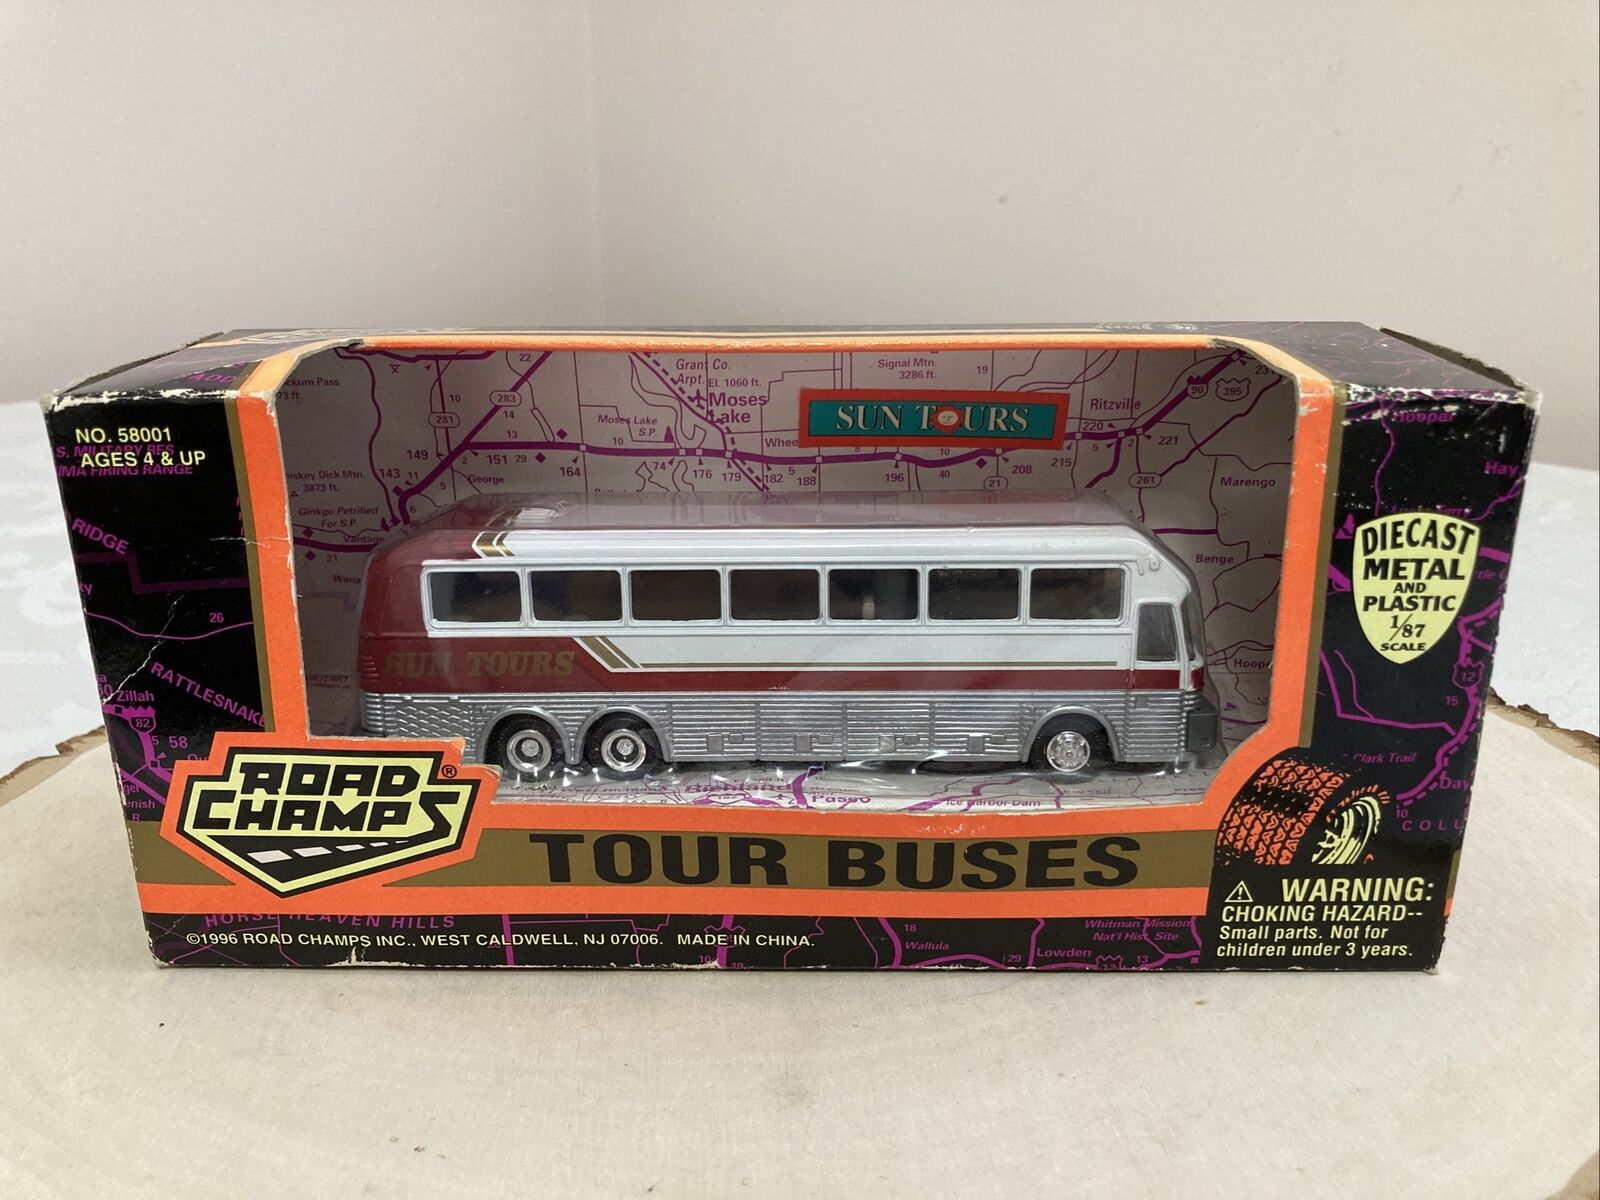 VTG 1996 Road Champs Tour Buses Sun Tours NO. 58001 Die Cast 1/87 Scale Bus